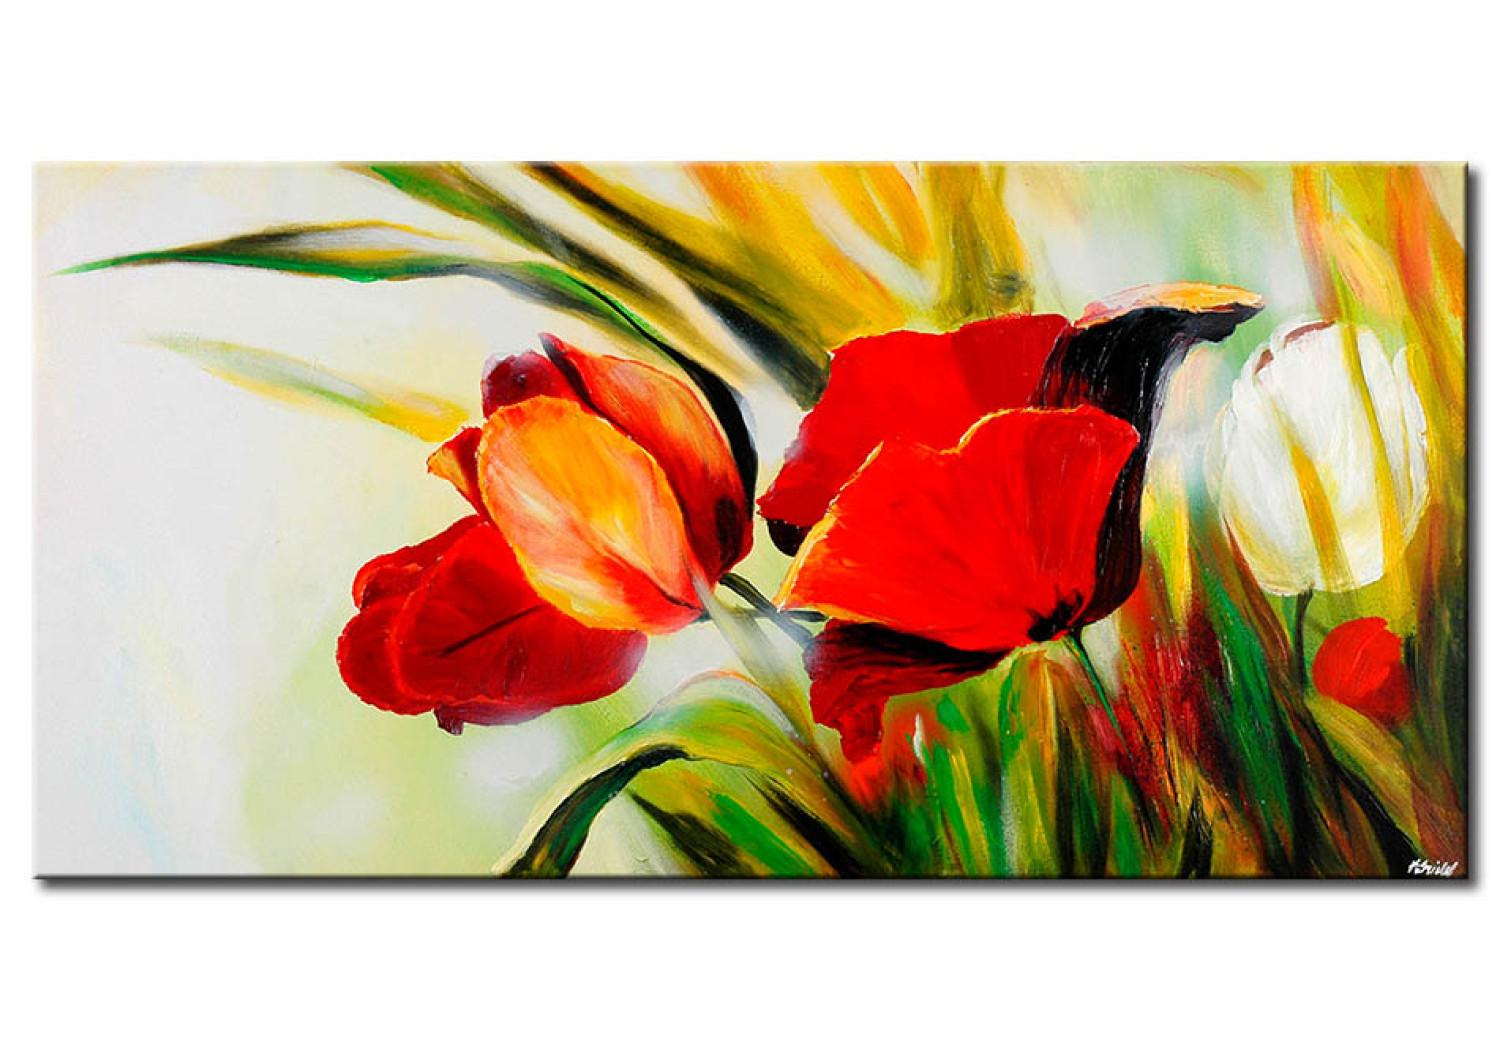 Cuadro Tulipanes ocultos (1 pieza) - flores entre altas hierbas